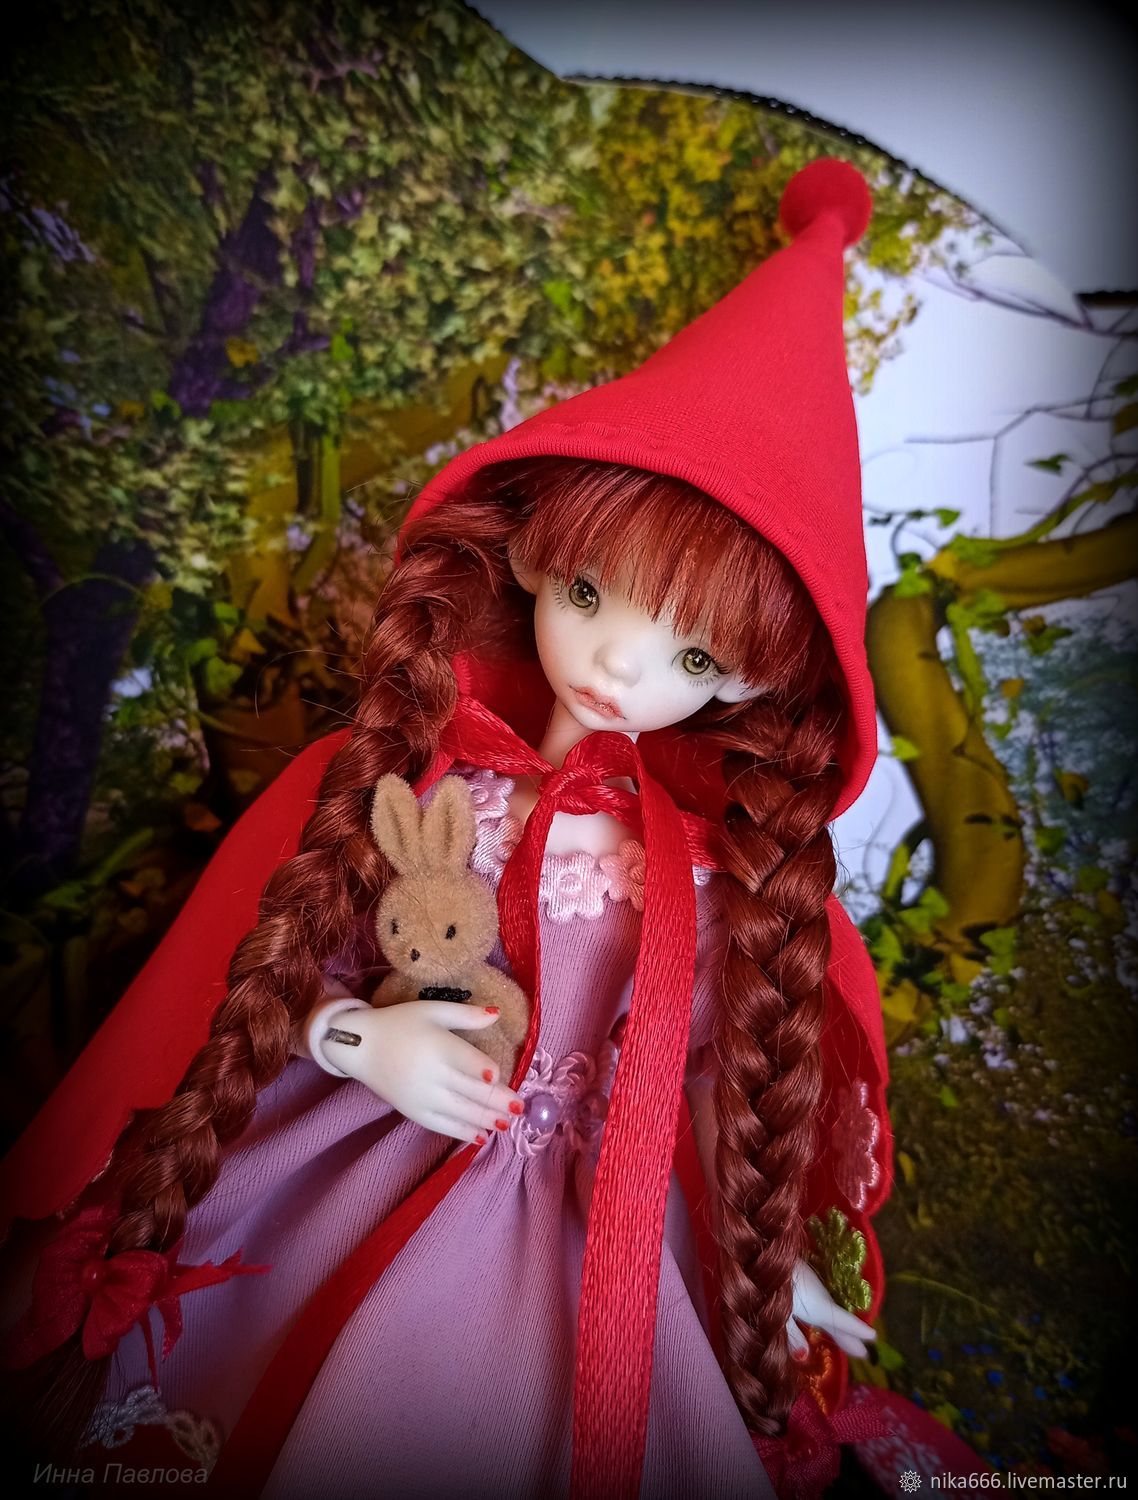  Красная Шапочка (фарфор), Шарнирная кукла, Самара,  Фото №1